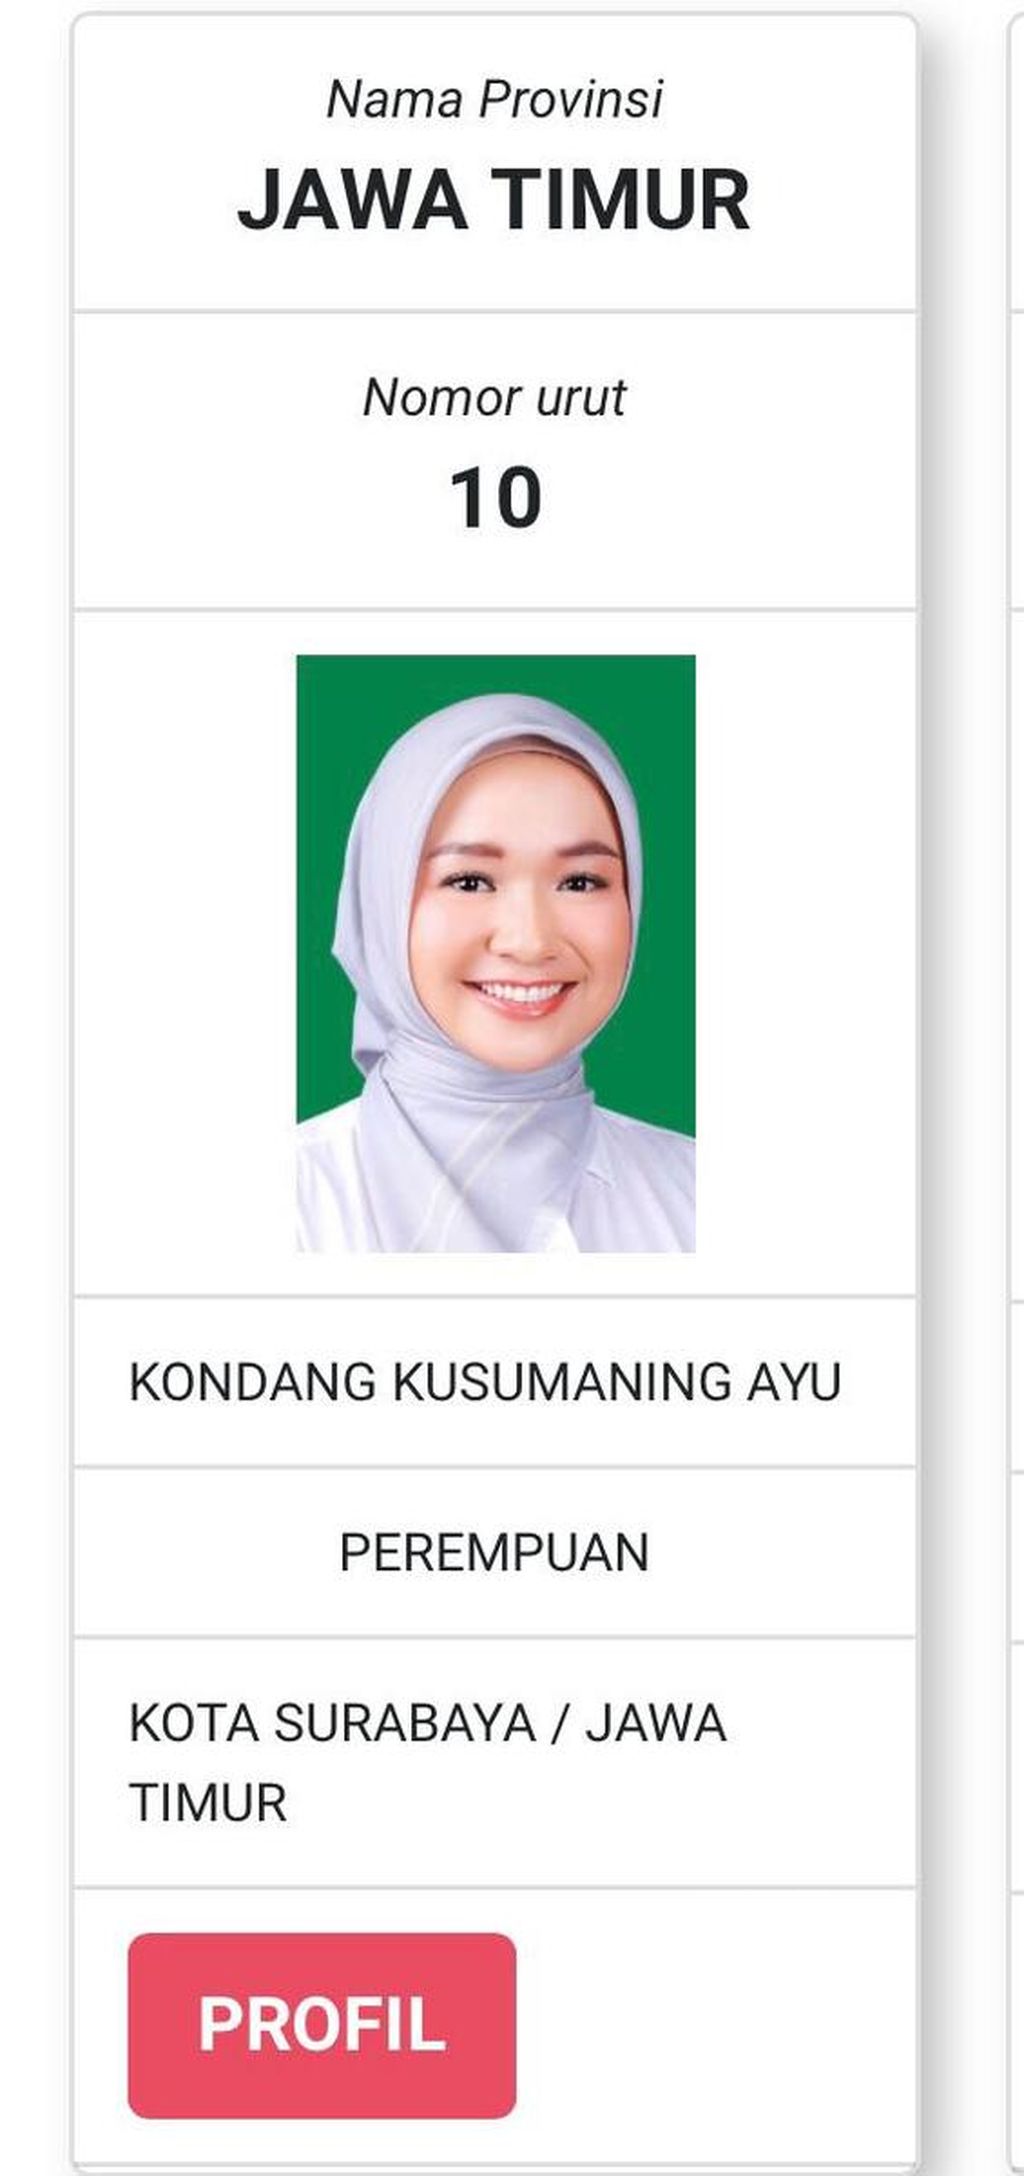 Tangkapan layar profil Kondang Kusumaning Ayu, calon anggota DPD Jatim yang memperoleh banyak suara karena fotonya yang memesona.